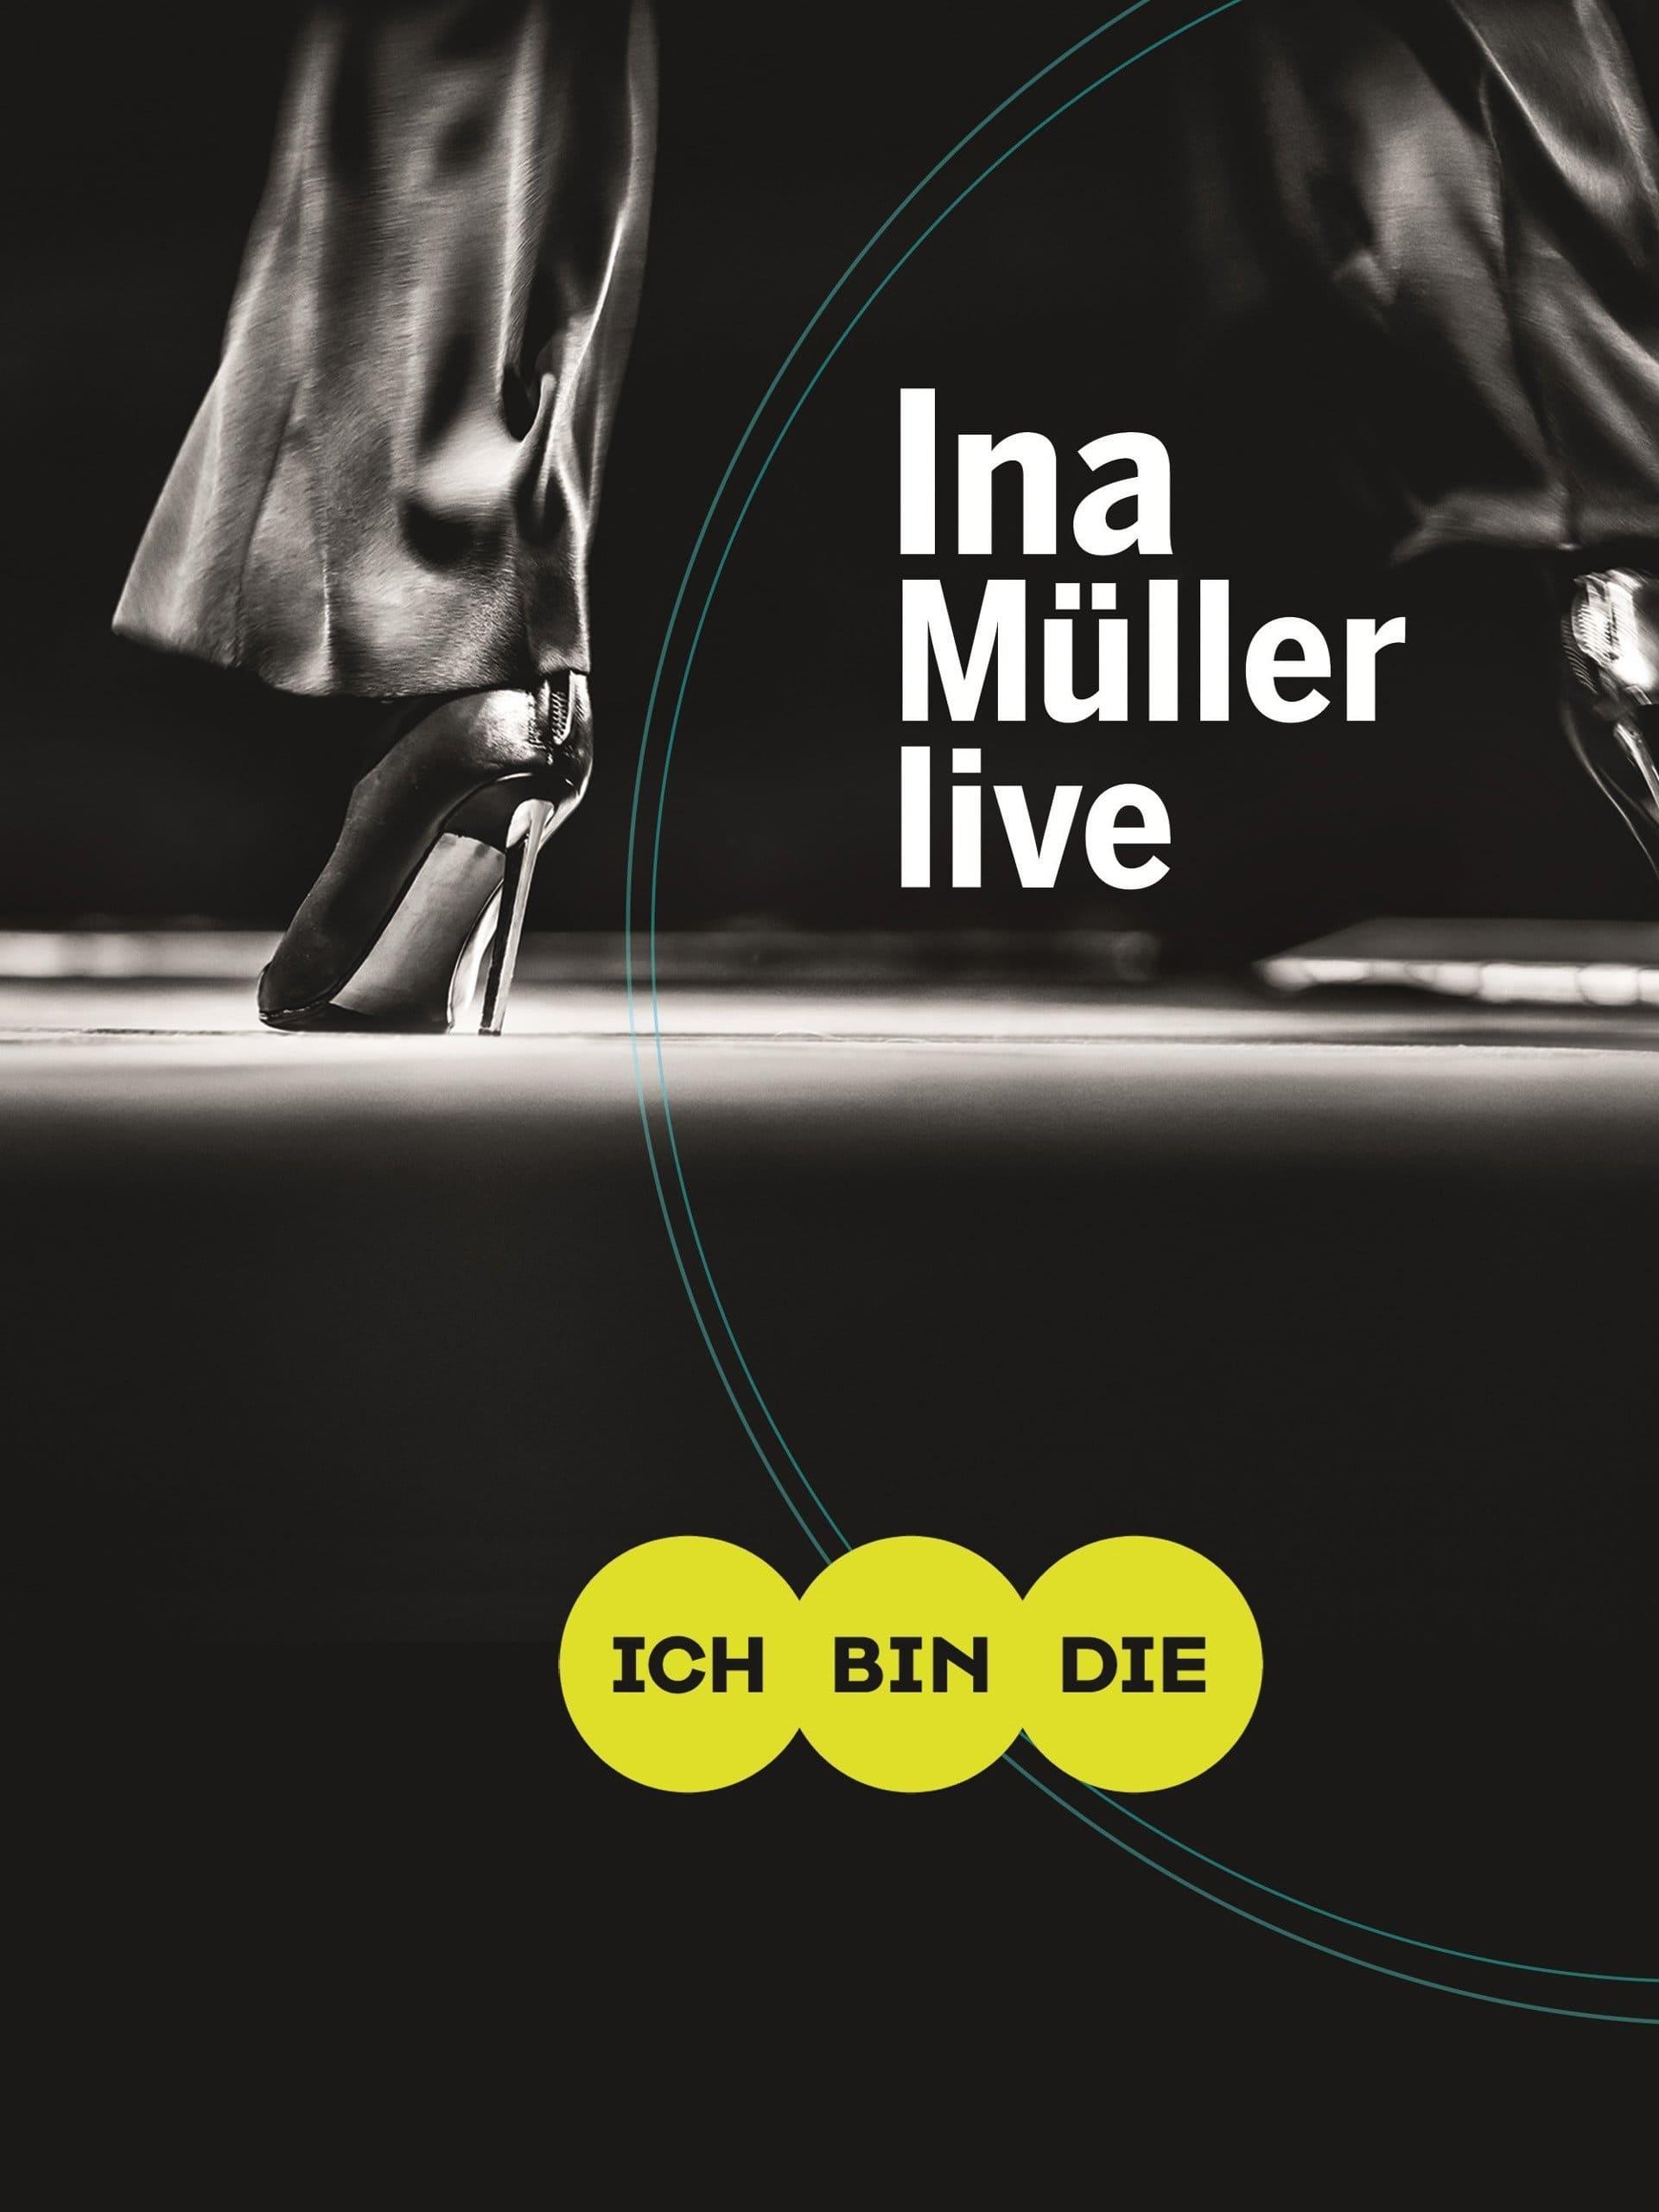 Ina Müller - Ich bin die Live poster